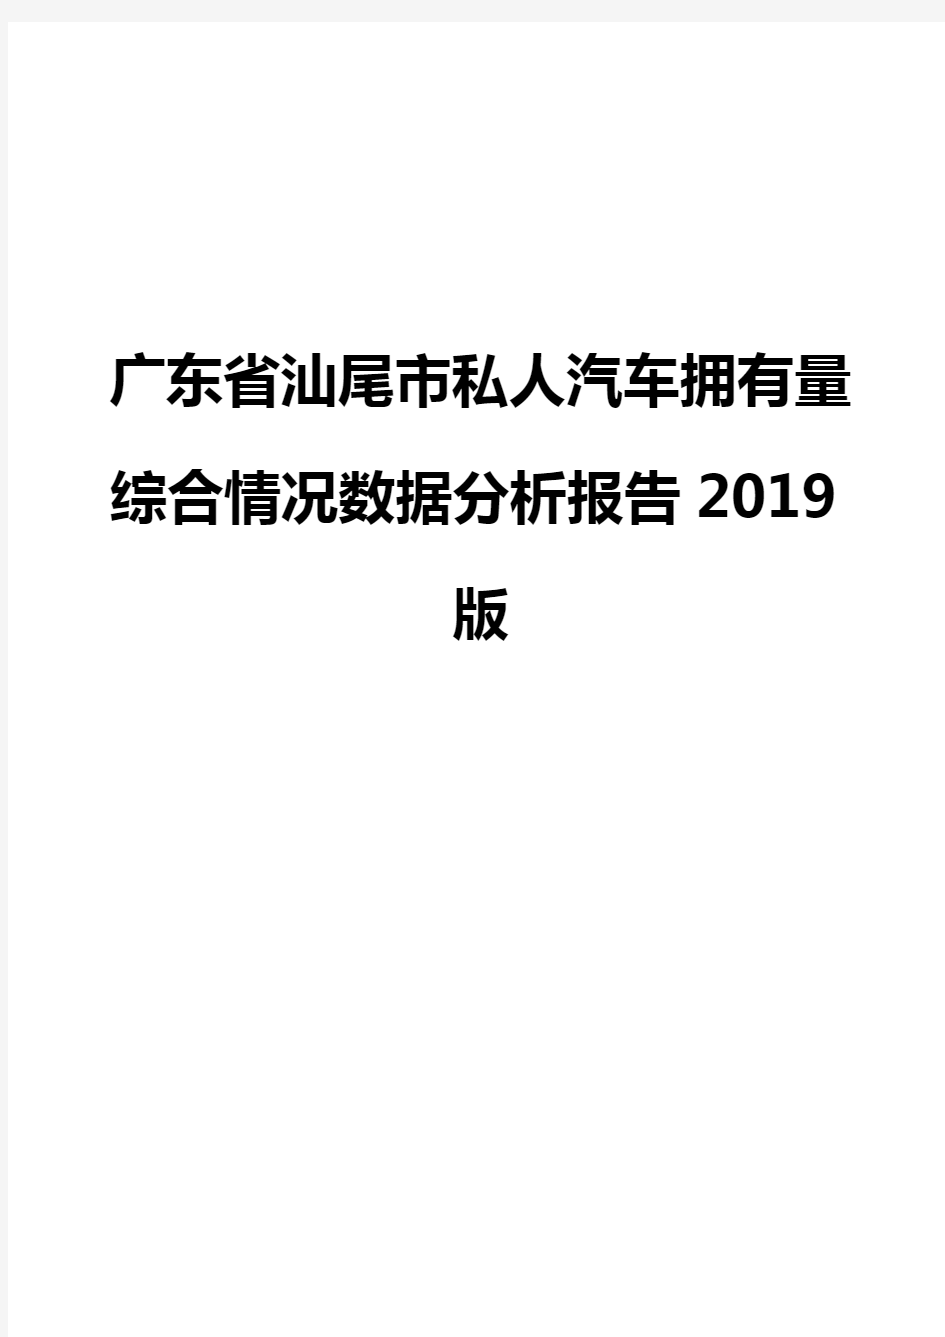 广东省汕尾市私人汽车拥有量综合情况数据分析报告2019版